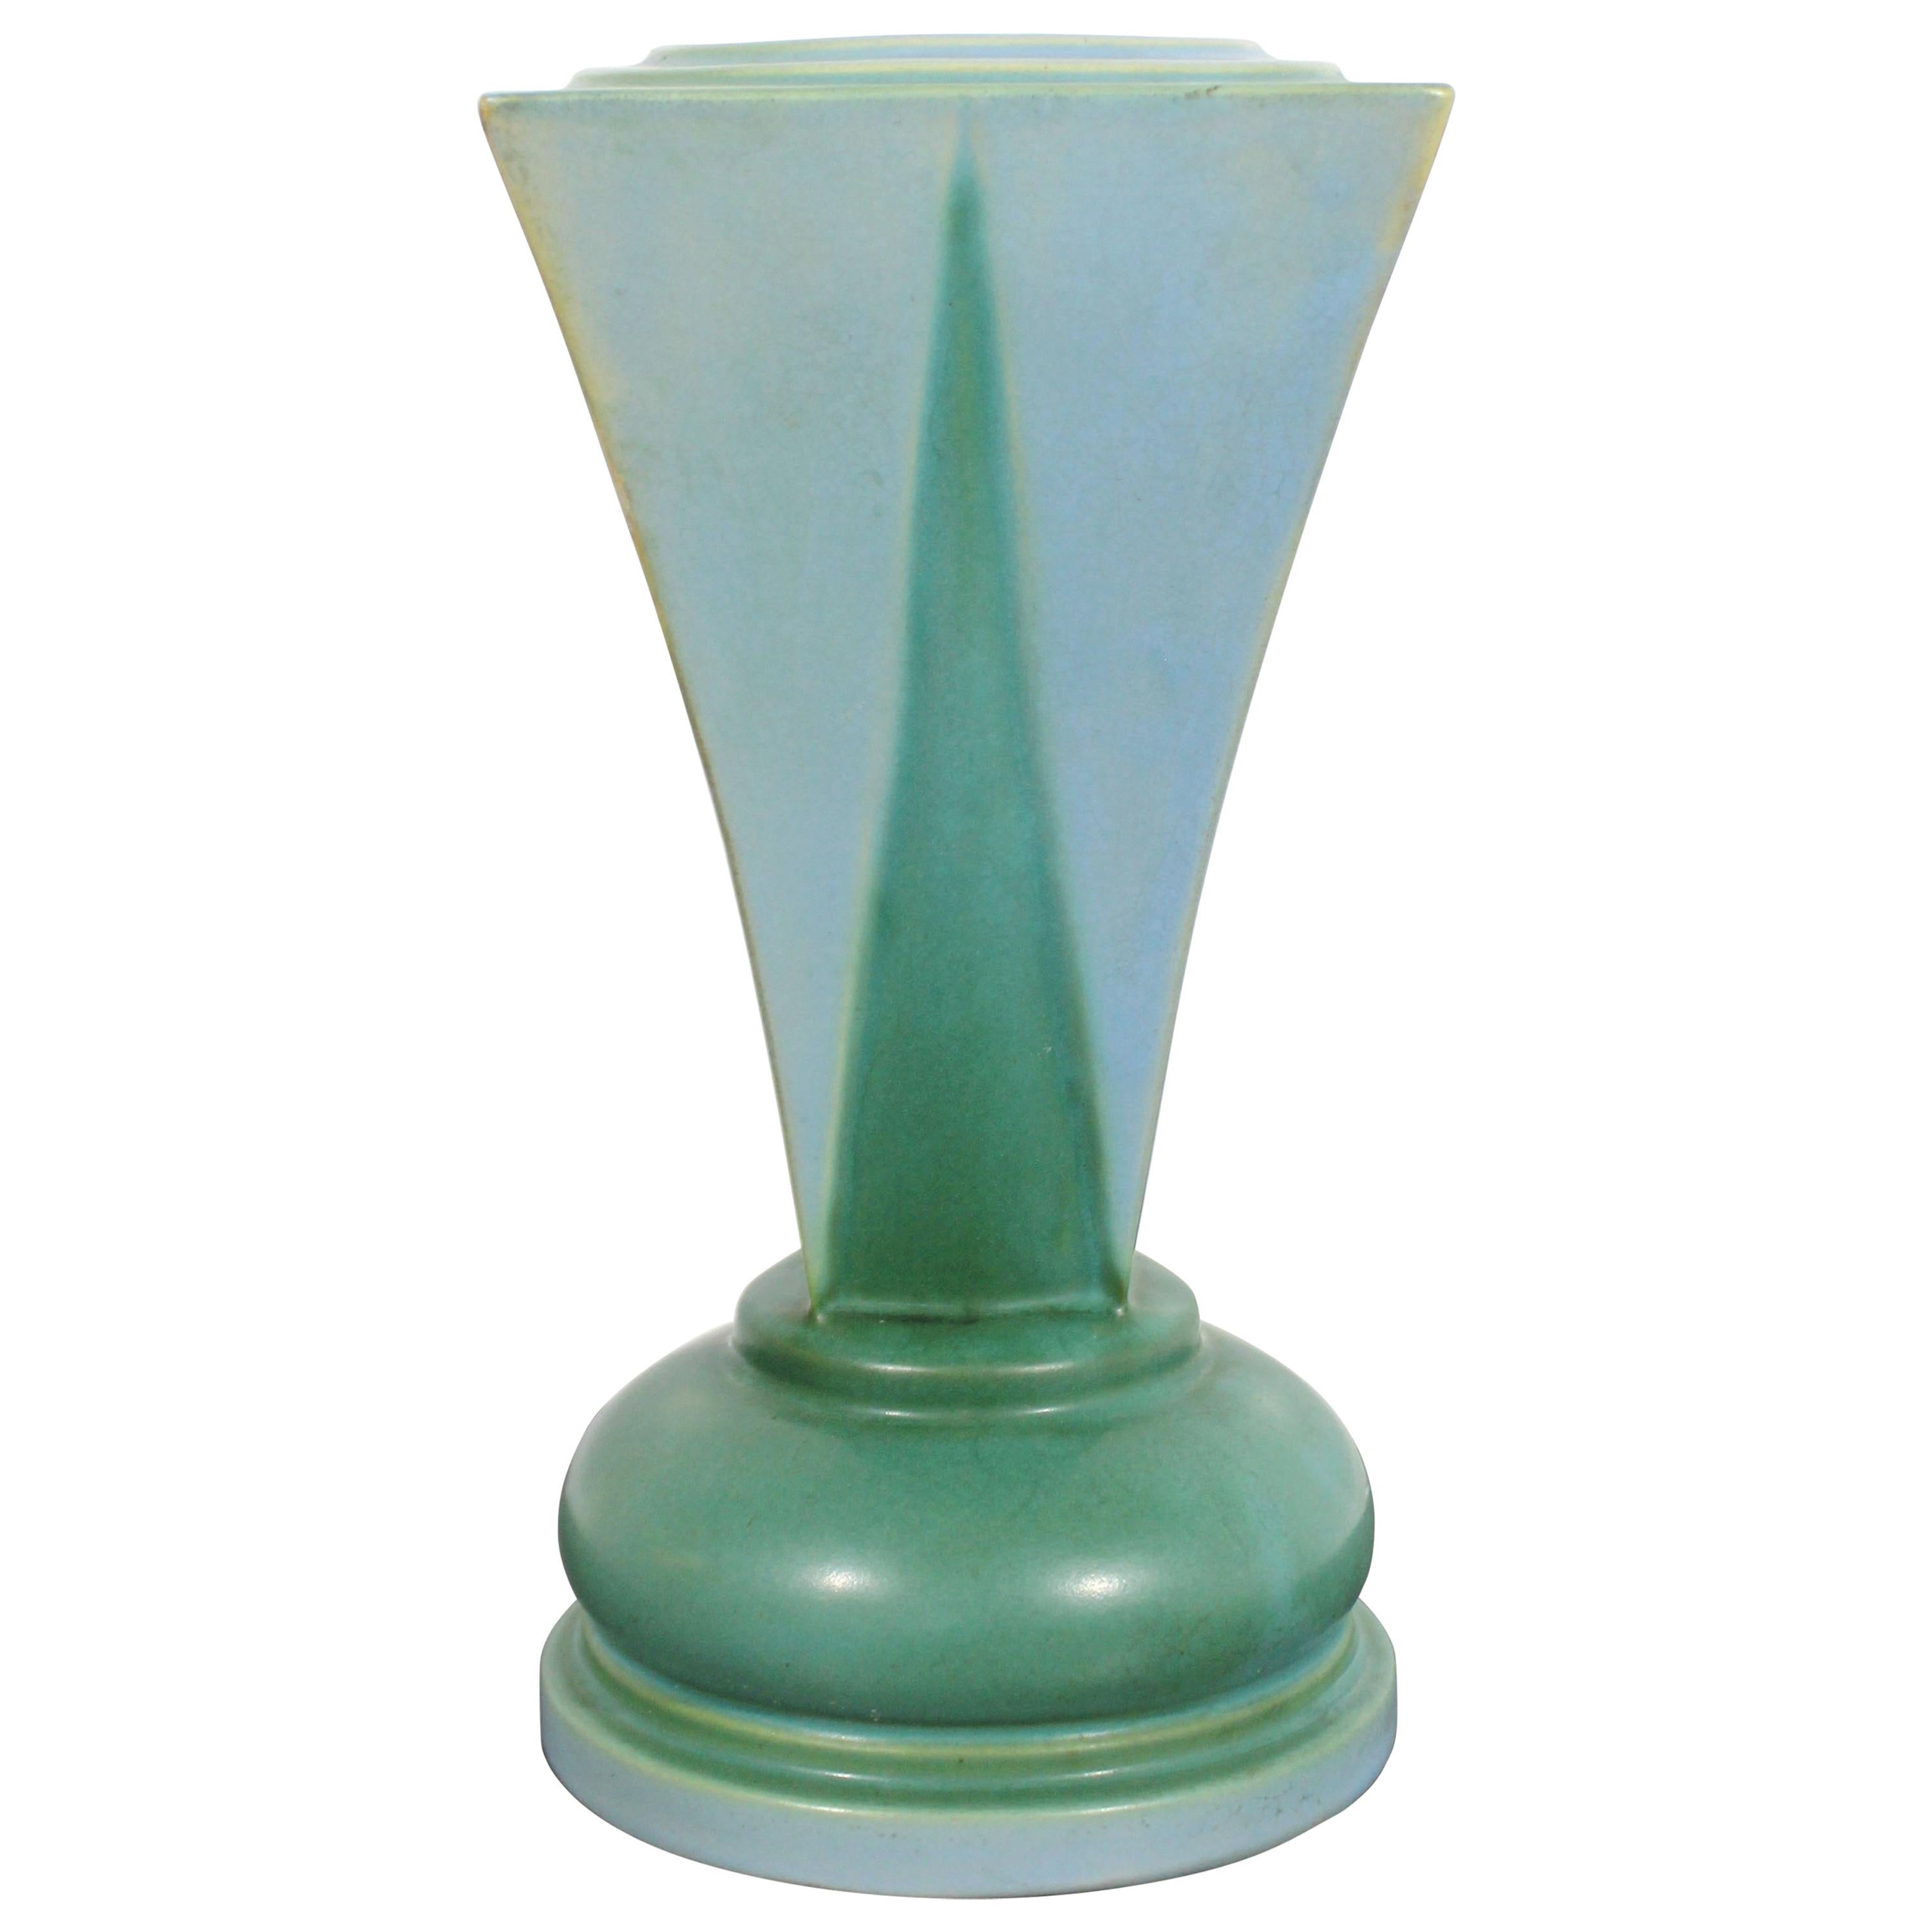 Art Deco Roseville Futura Shooting Star Shaped Ceramic Art Vase Vessel Green